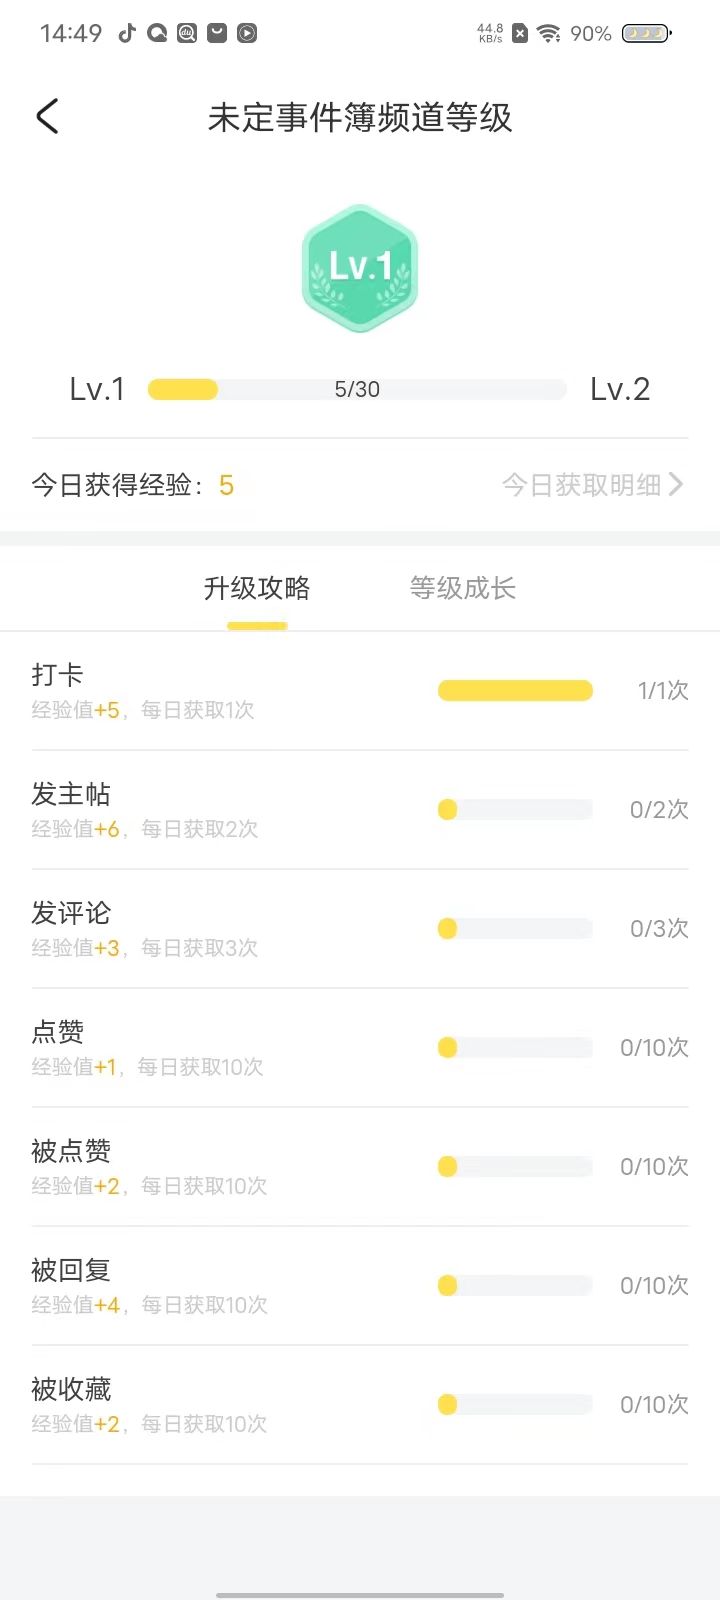 米游社app